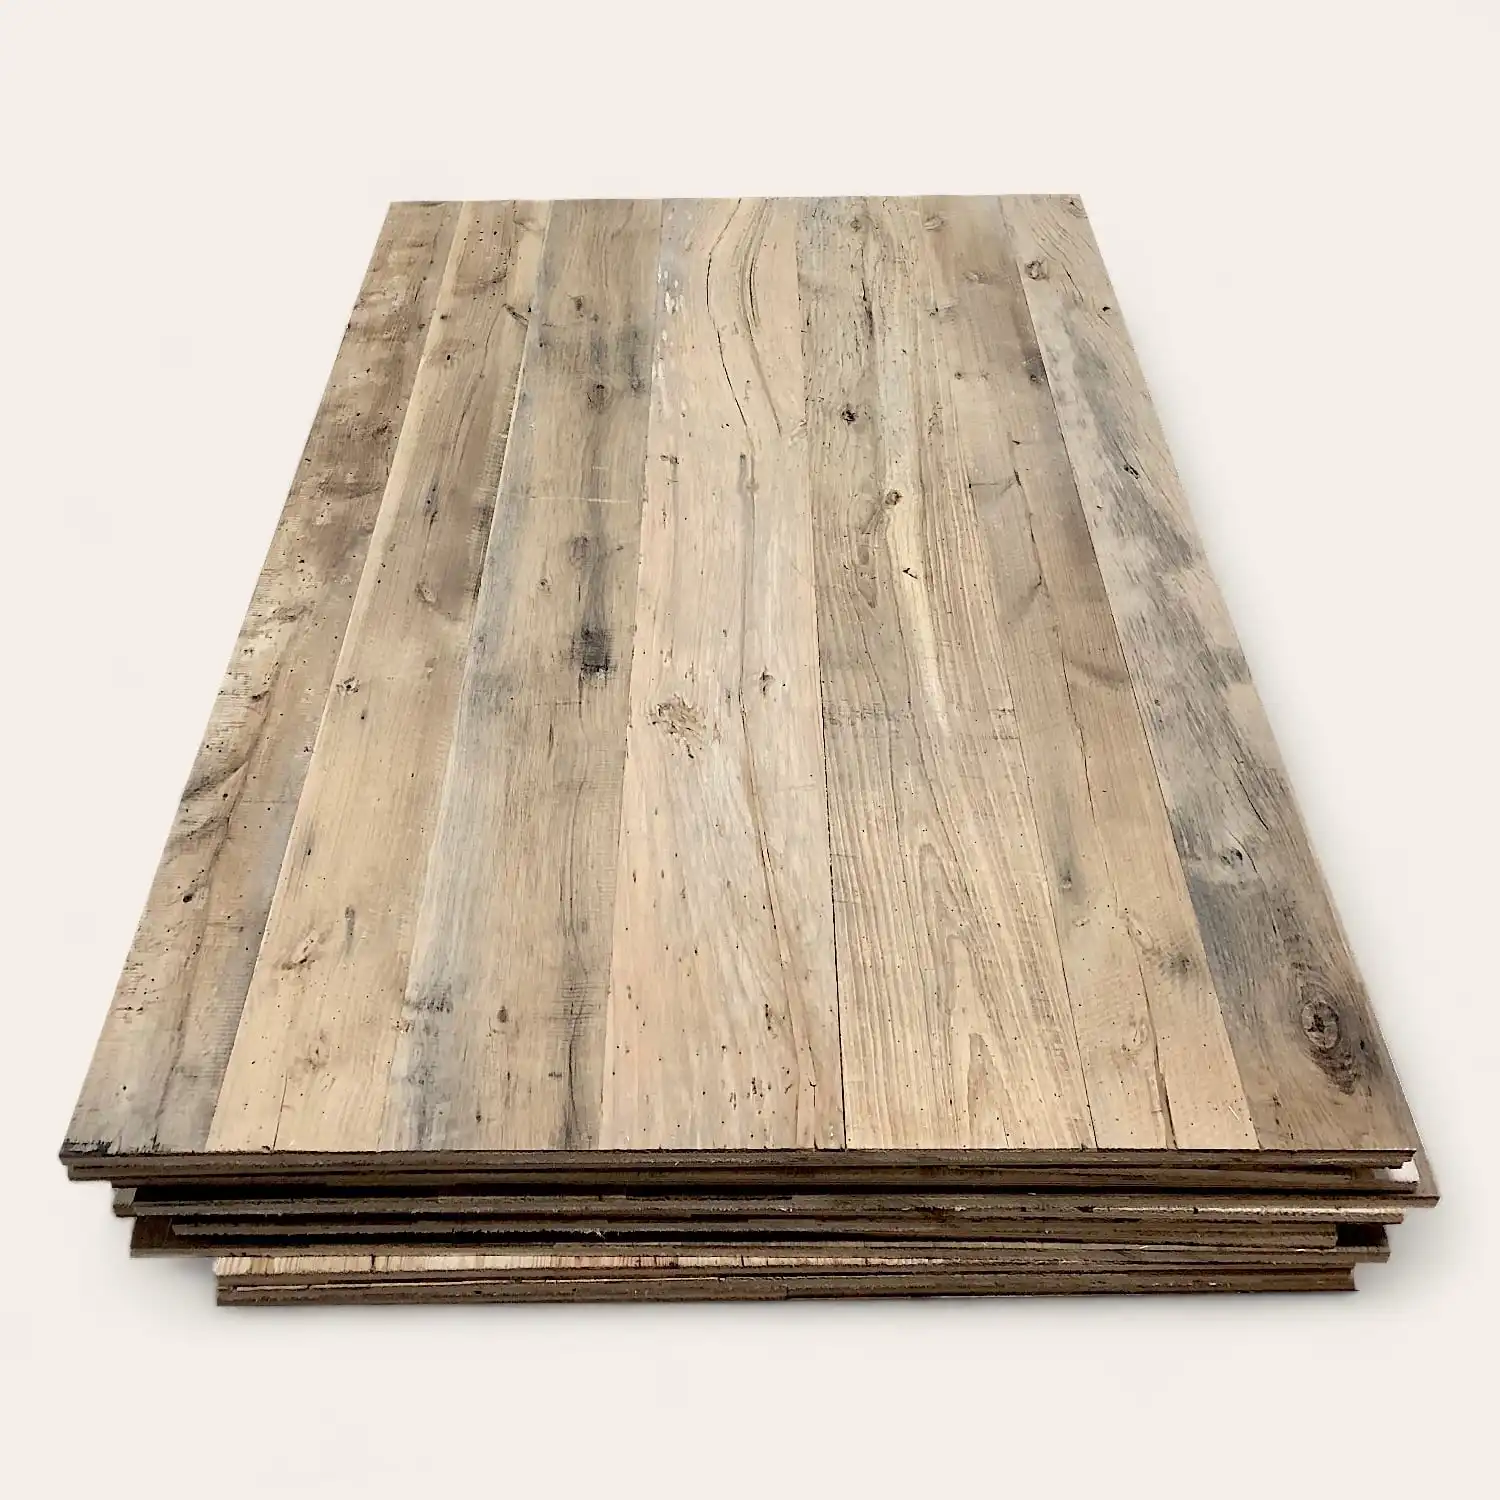  Pile de planches de parquet stratifié avec une finition naturelle à grain de bois clair, vue de côté sur un fond blanc. Les panneaux sont conçus dans le style des « panneaux vieux bois ». 